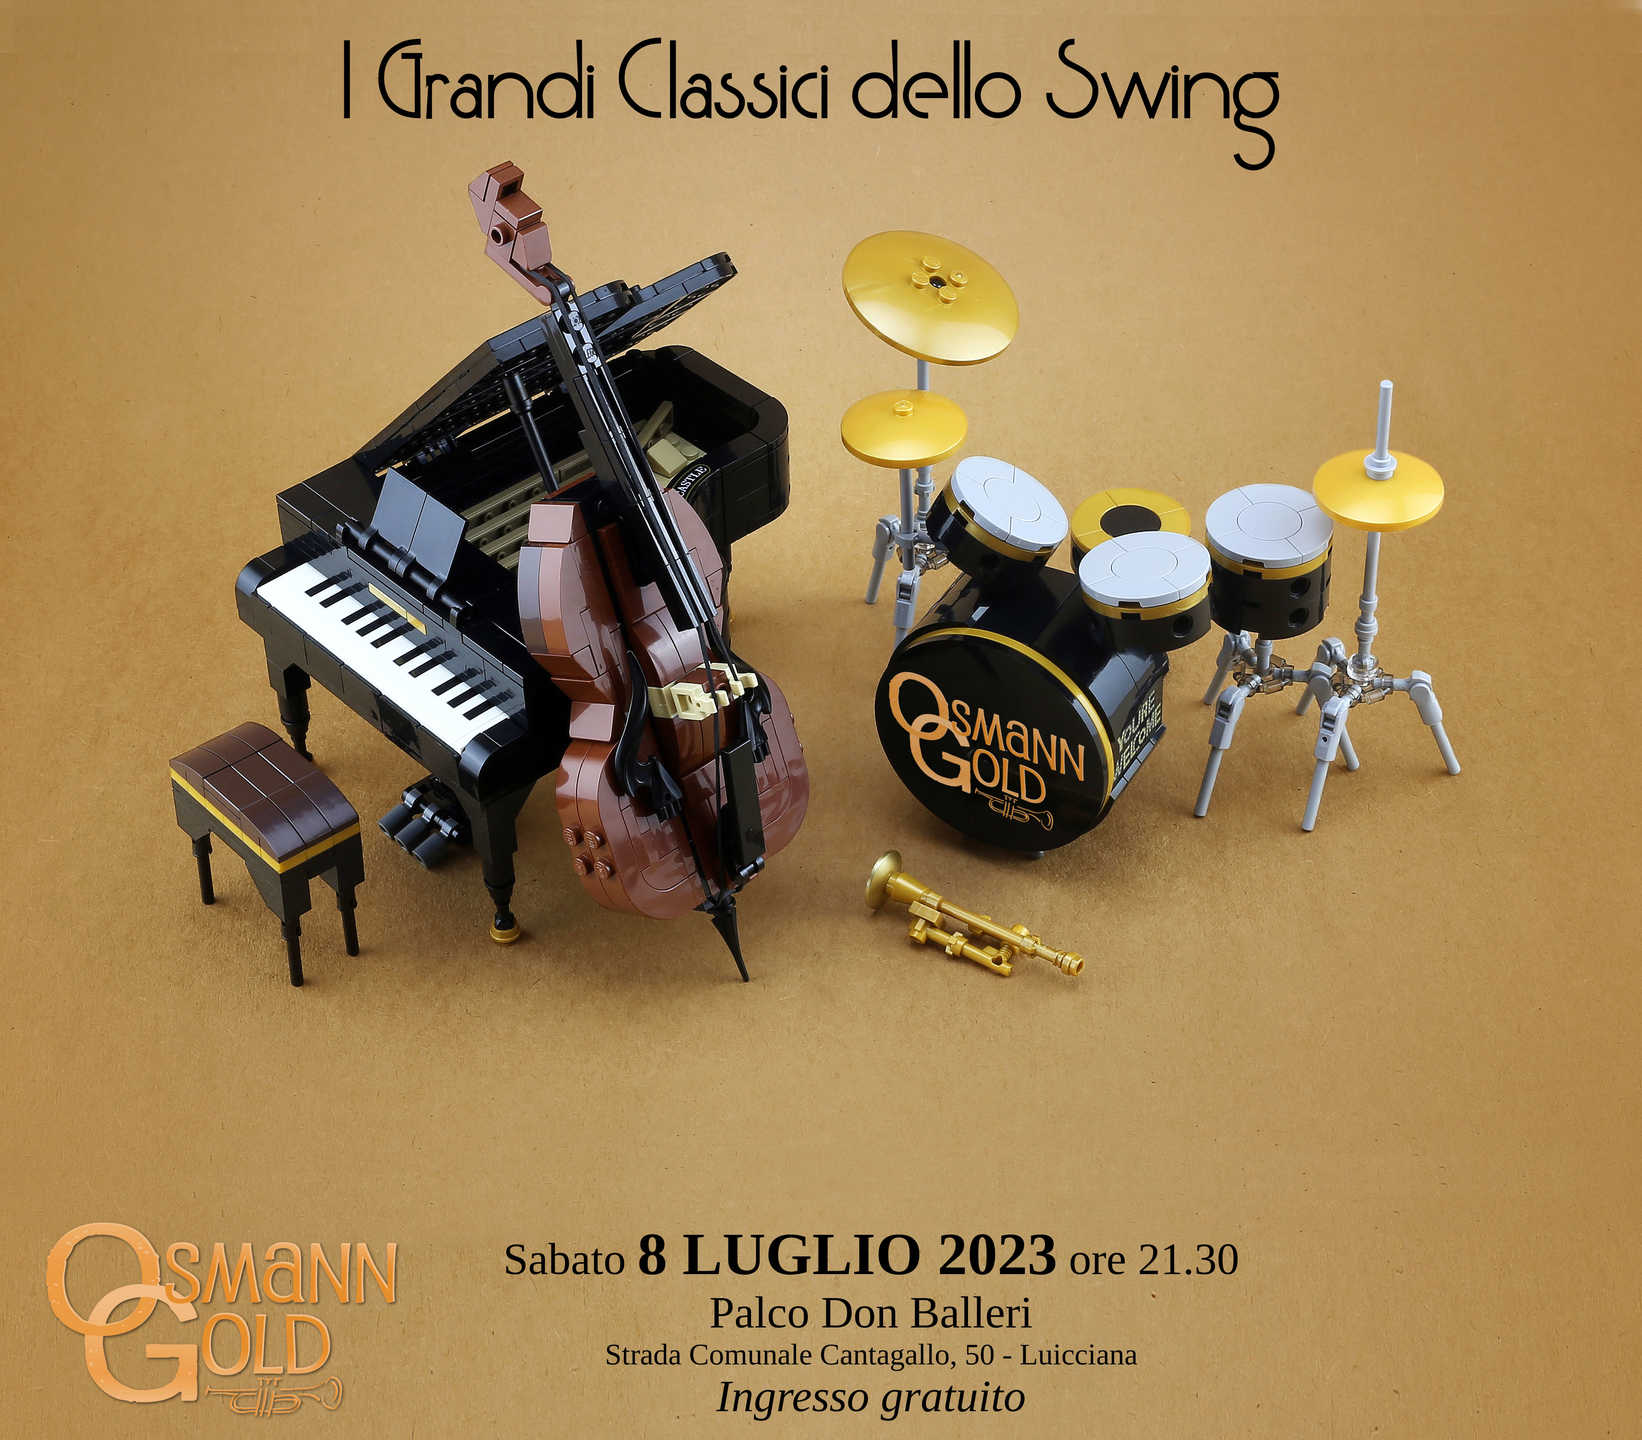 Locandina del concerto OsmannGold "I Grandi Classici dello Swing" a Luicciana